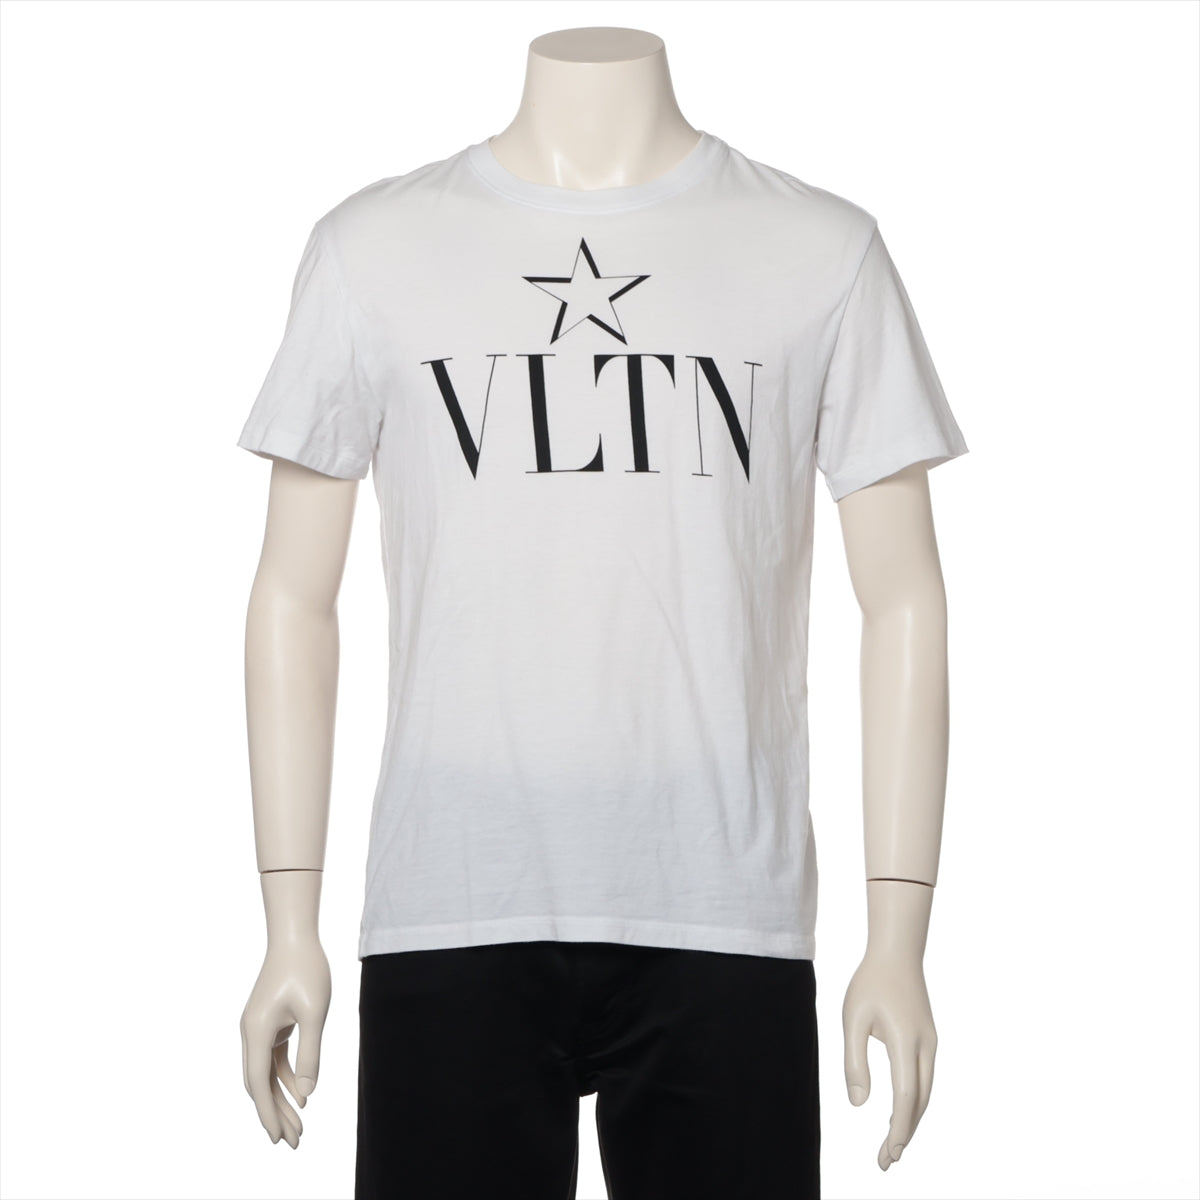 ヴァレンティノ VLTNSTAR 19年 コットン Tシャツ XS メンズ ホワイト  TB3MG0515B2 品タグ文字スレ